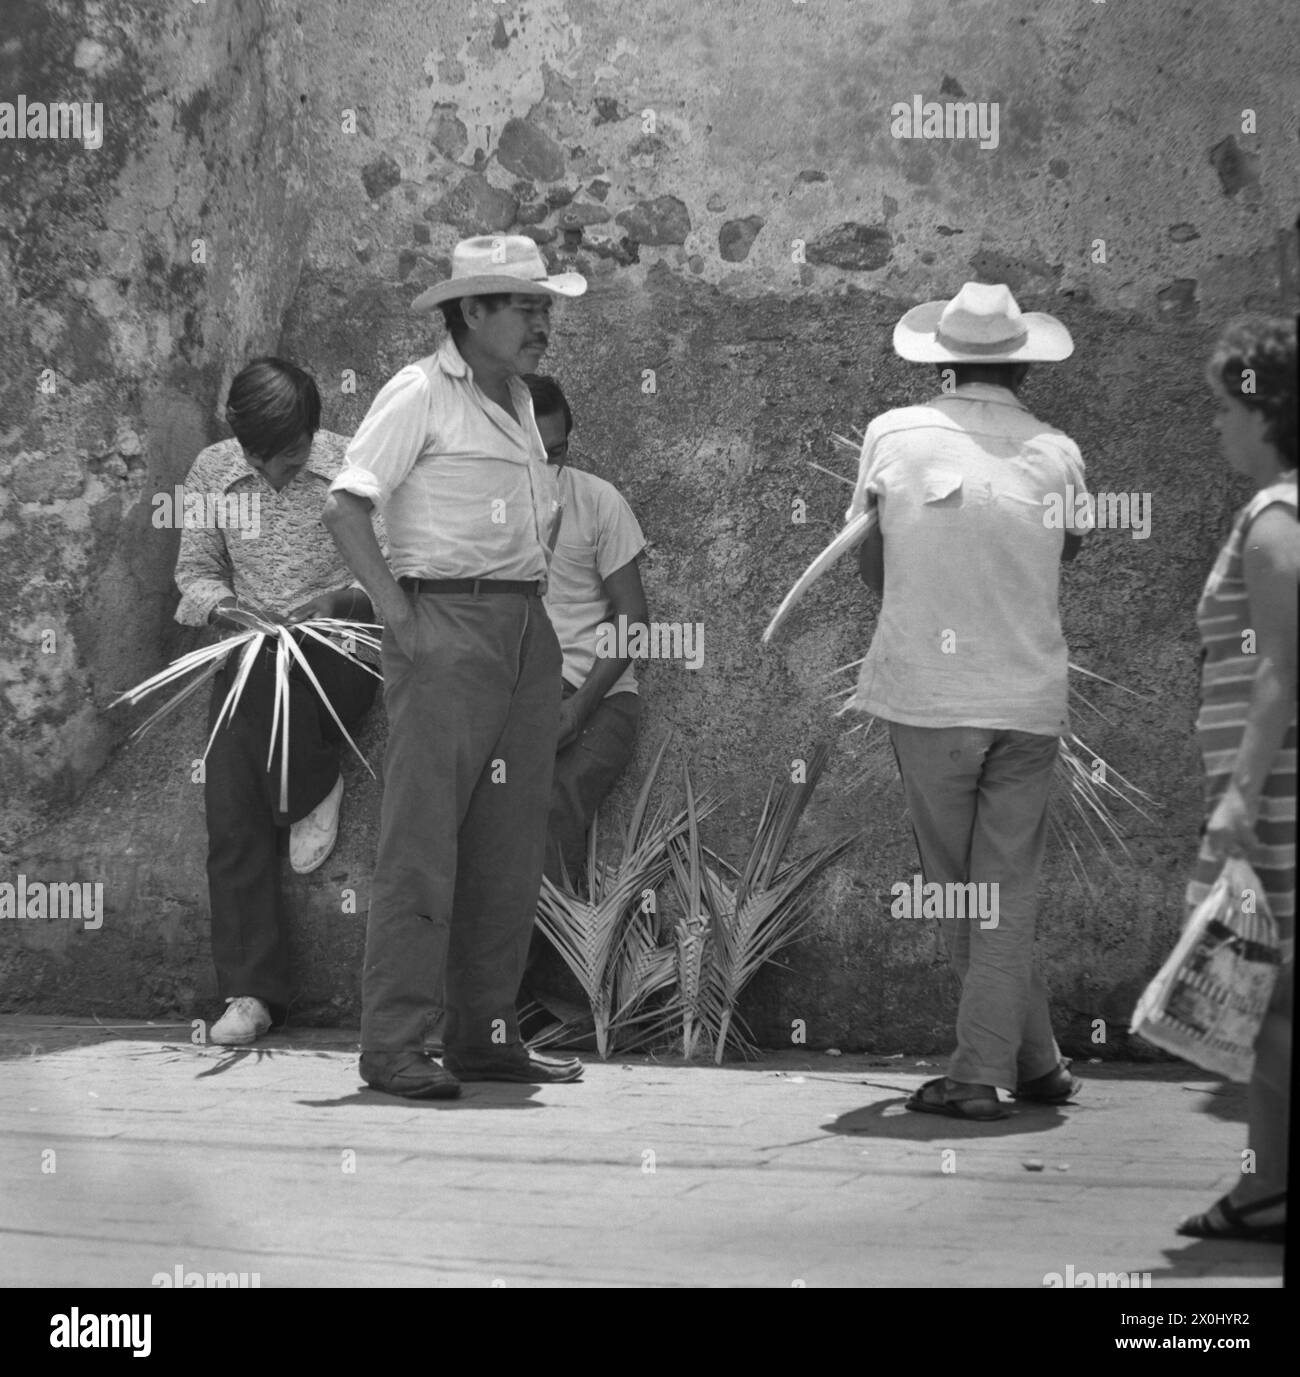 Quatre hommes se tiennent ensemble sur un mur à Guernavaca au Mexique. Deux d'entre eux portent des chapeaux avec de larges pots de vin. D'autres sont des feuilles de palmier tressées. [traduction automatique] Banque D'Images